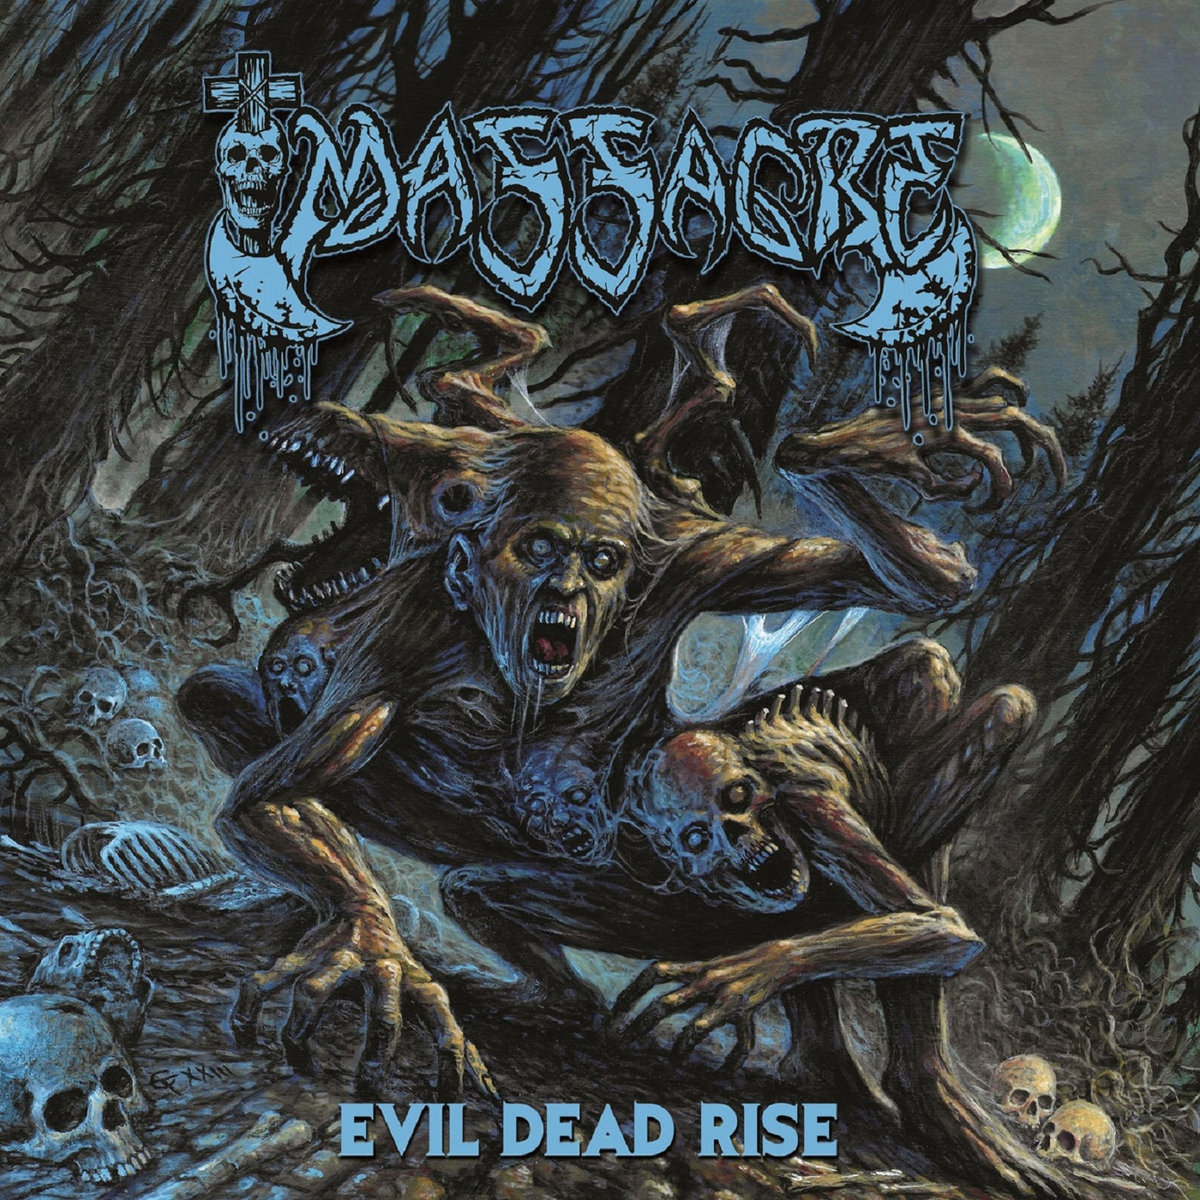 My ol' pal Kam Lee is back w/a new MASSACRE song about The Evil Dead: massacre3.bandcamp.com/album/evil-dea…